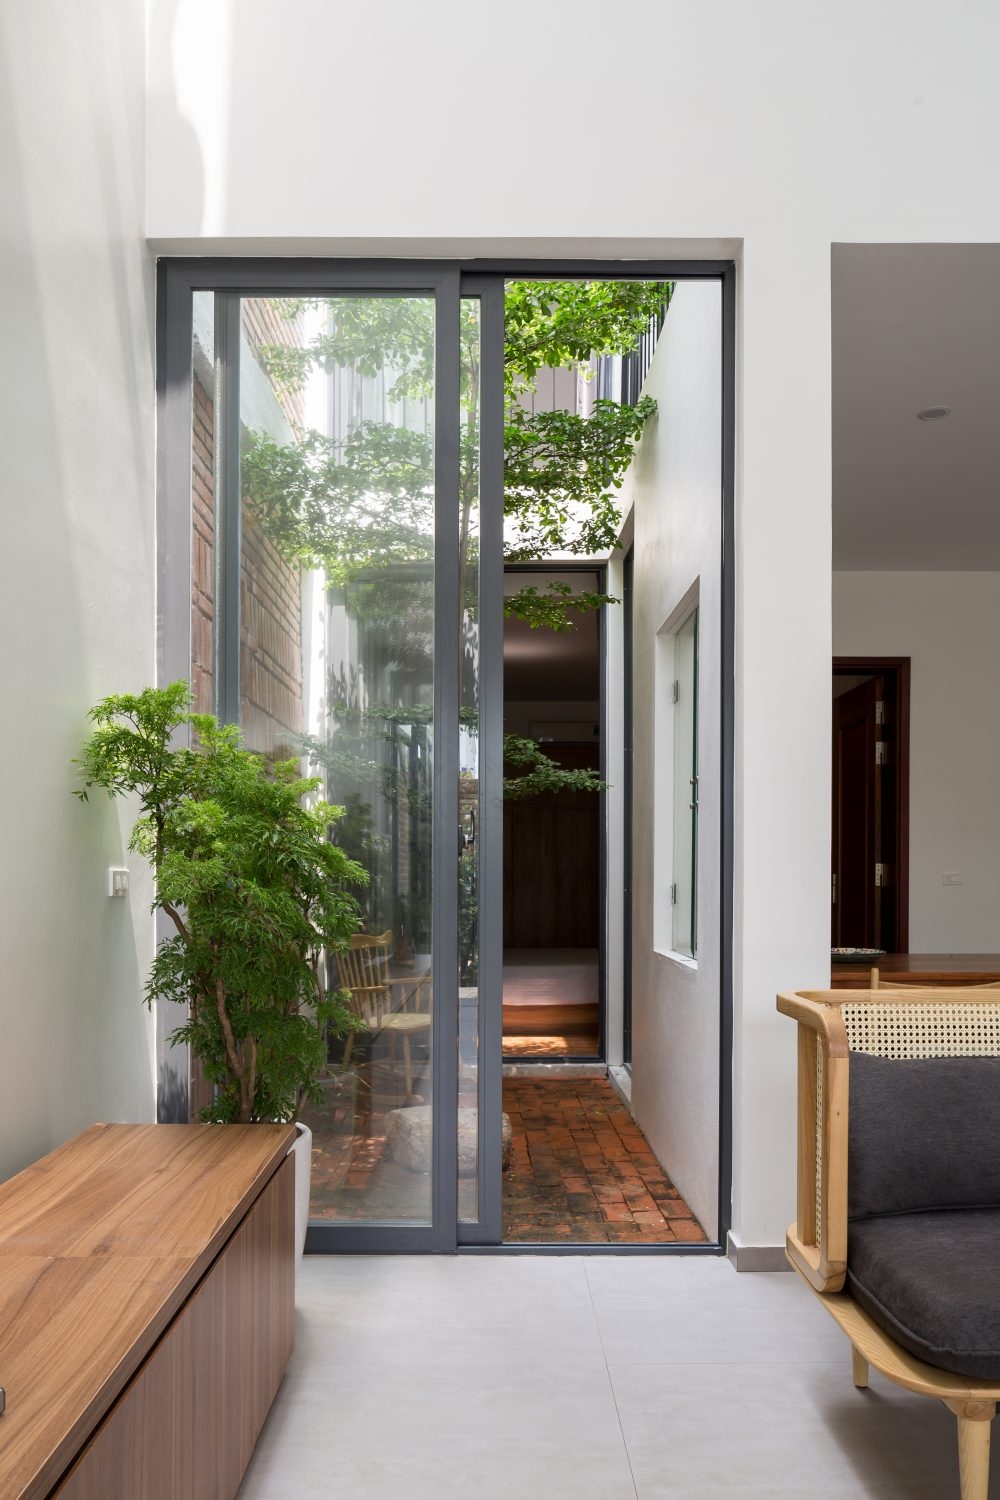 Thiết kế cửa kính cao giúp ngôi nhà có cảm giác cao ráo, thông thoáng, đồng thời giúp hơi thở, cuộc sống thiên nhiên len lỏi được vào không gian bên trong nhà.